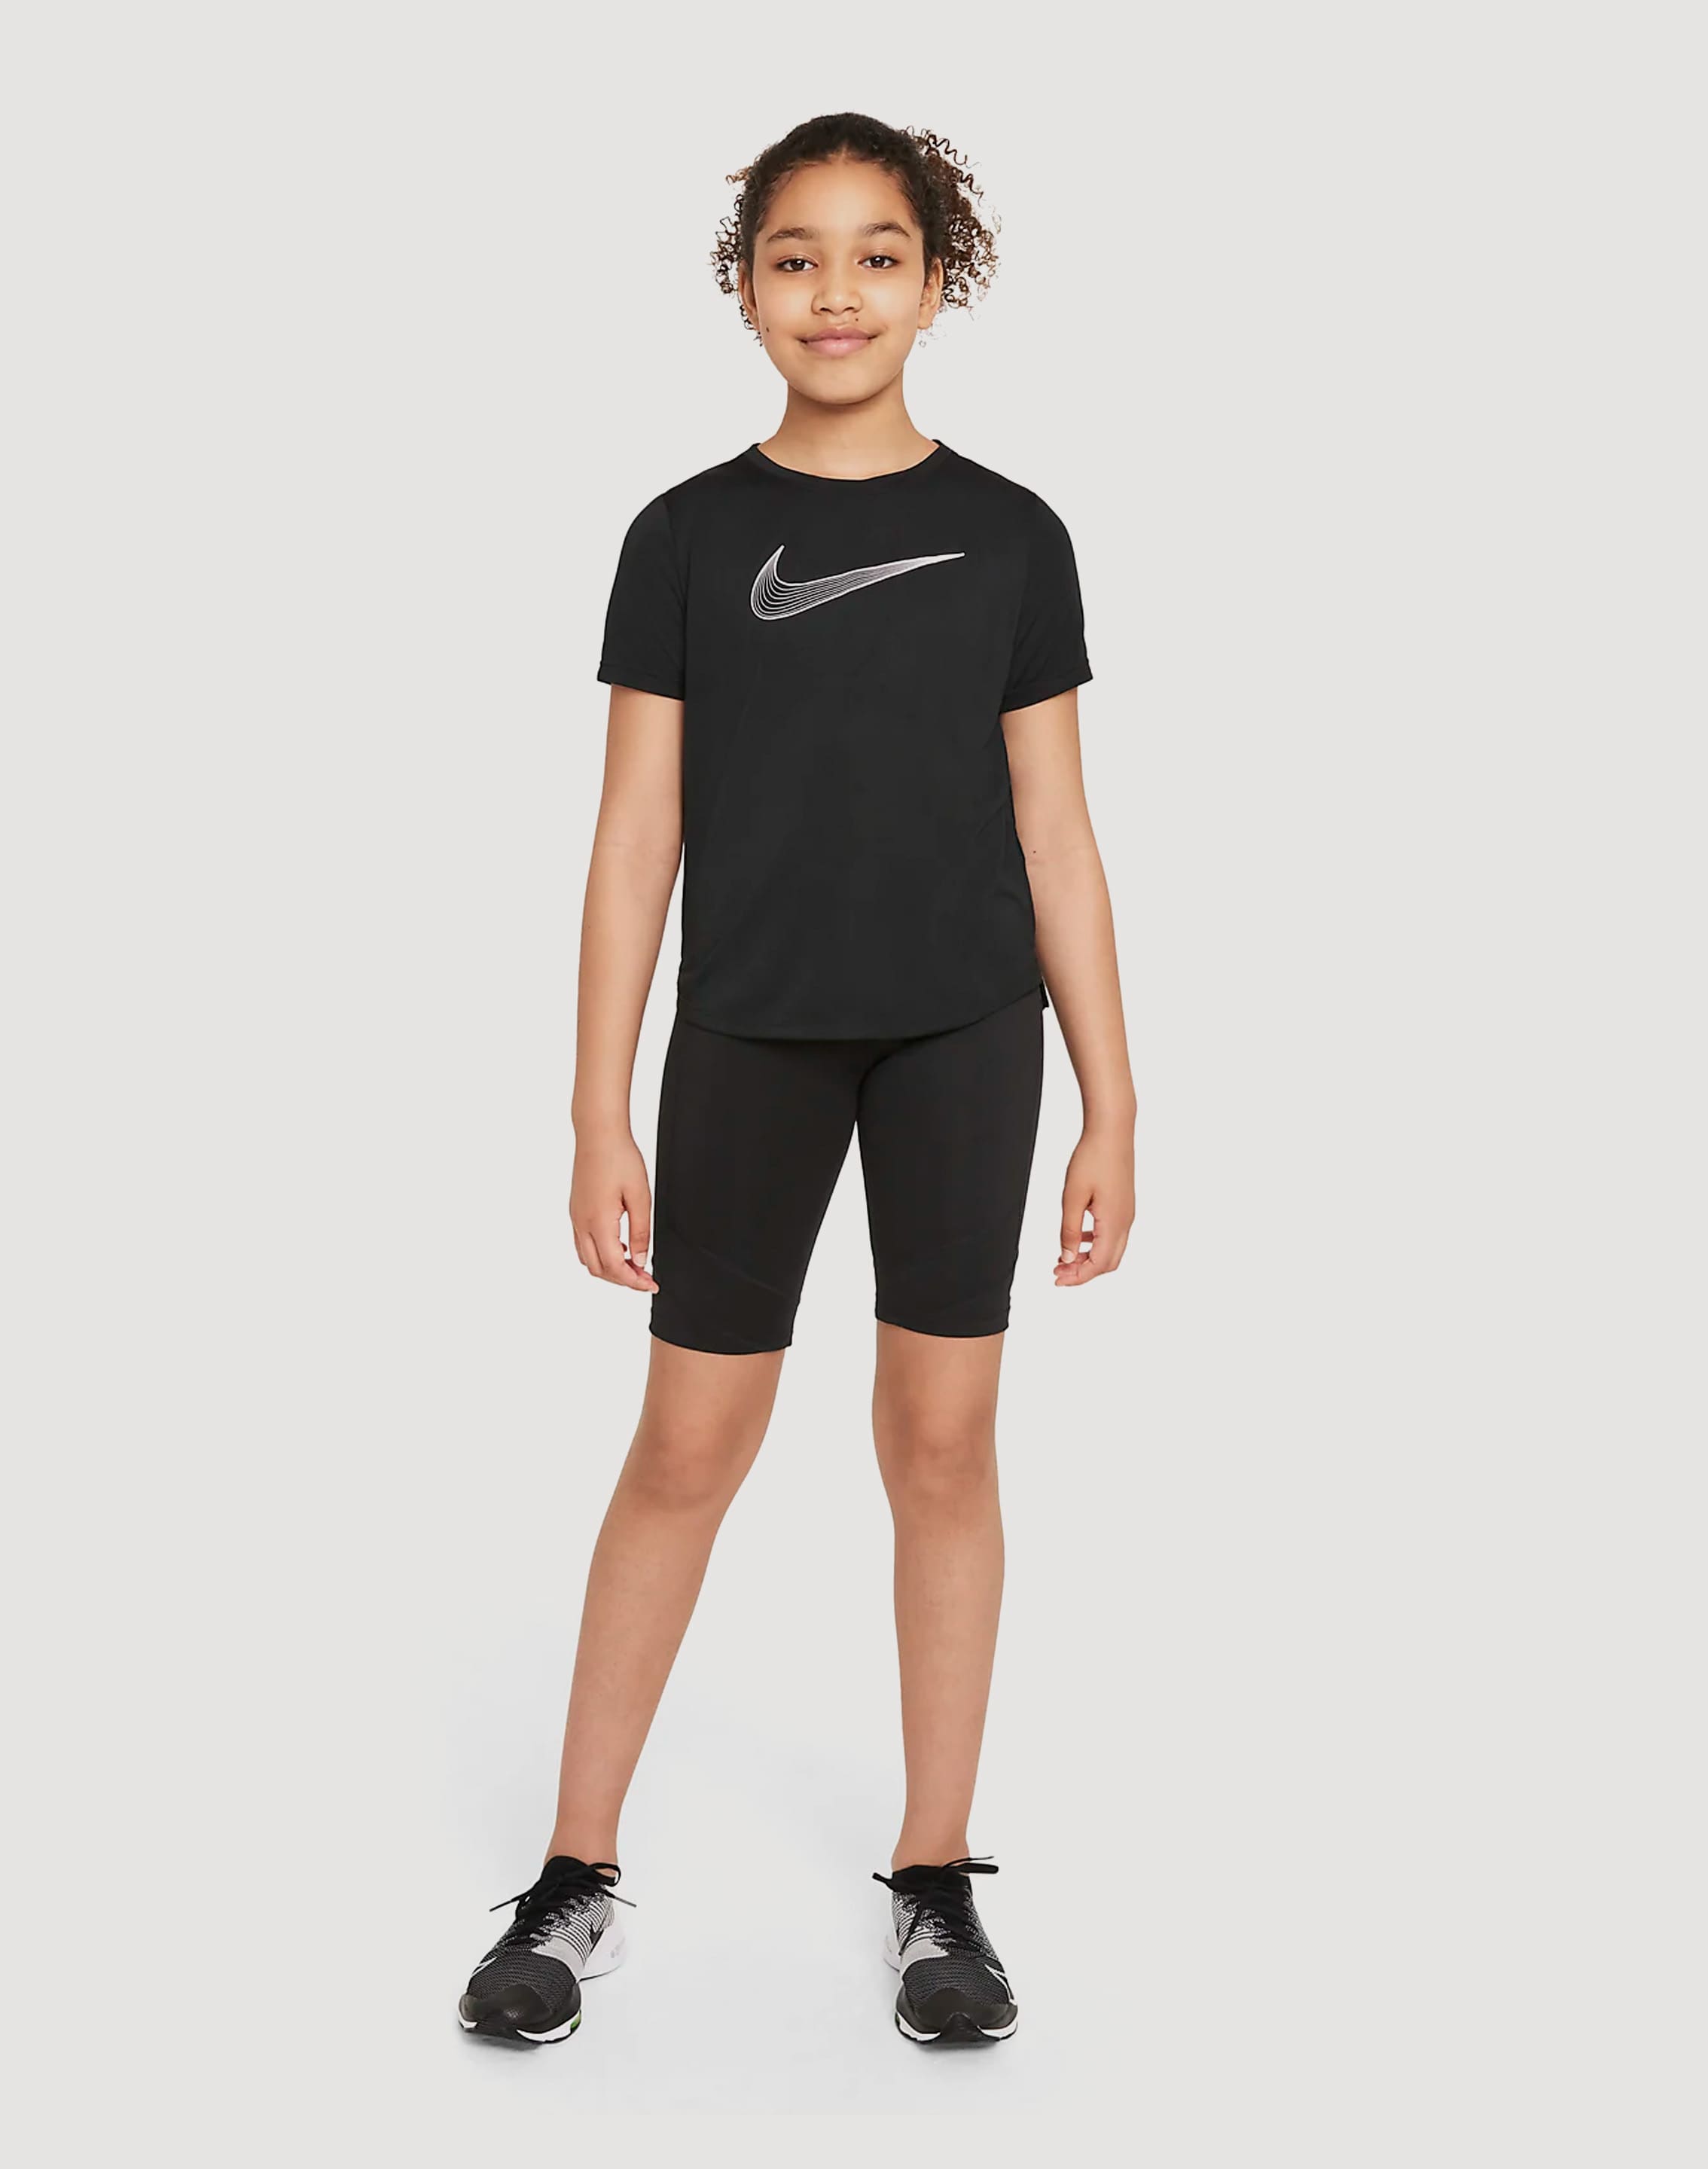 Nike Dri-FIT Tee – DTLR